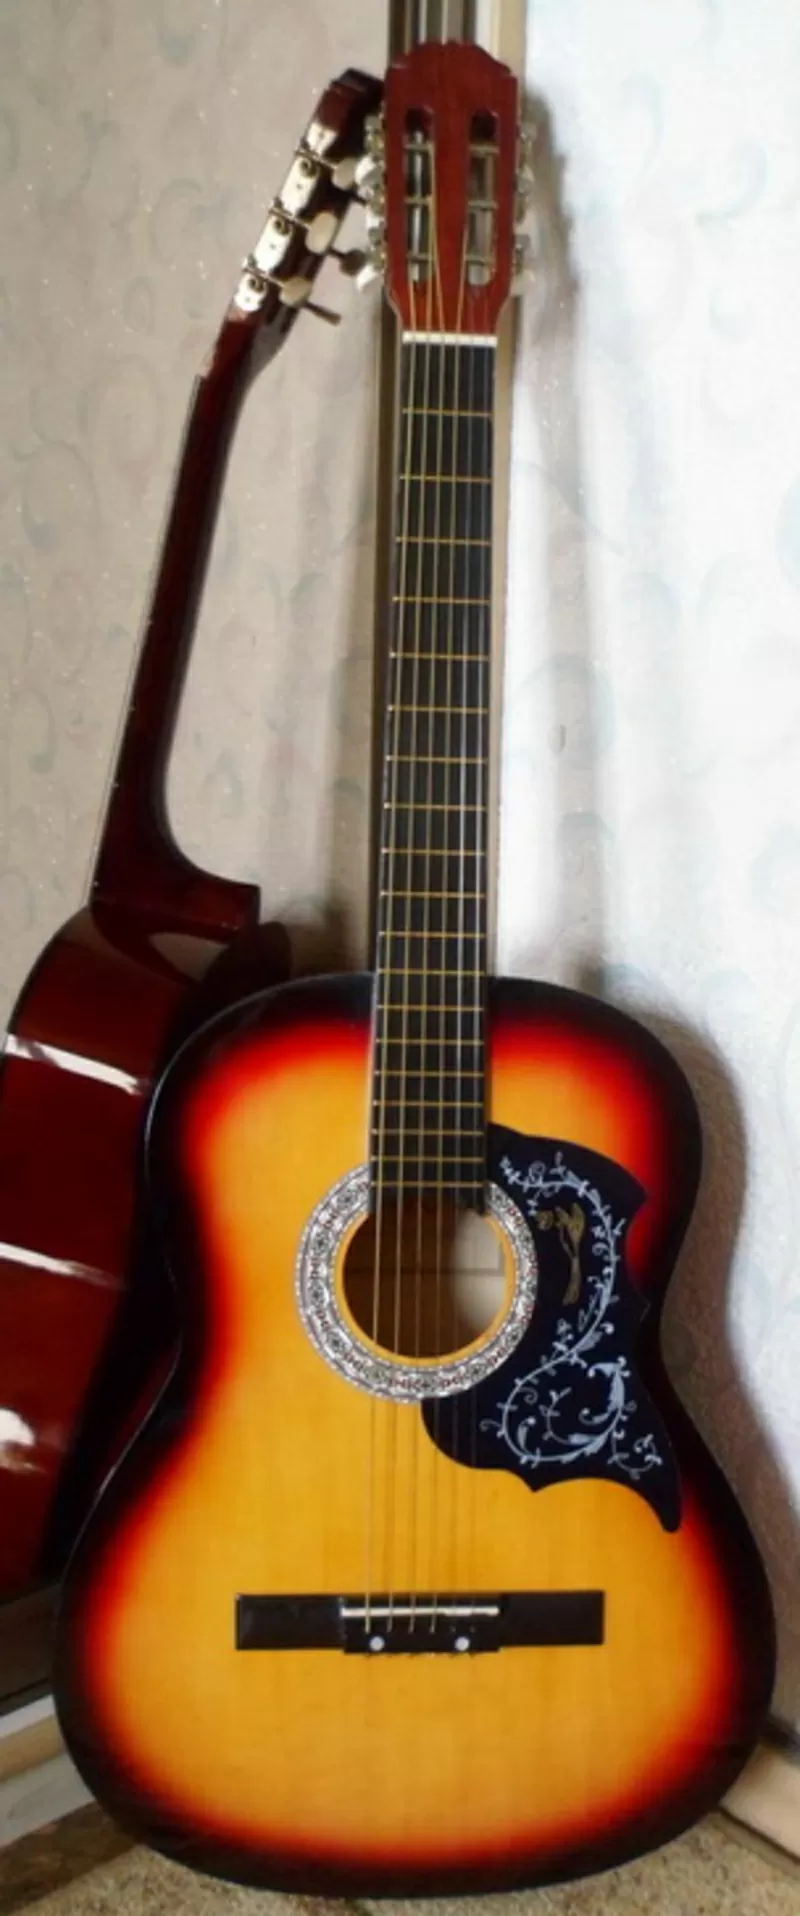 Акустическая гитара AS-39, новая